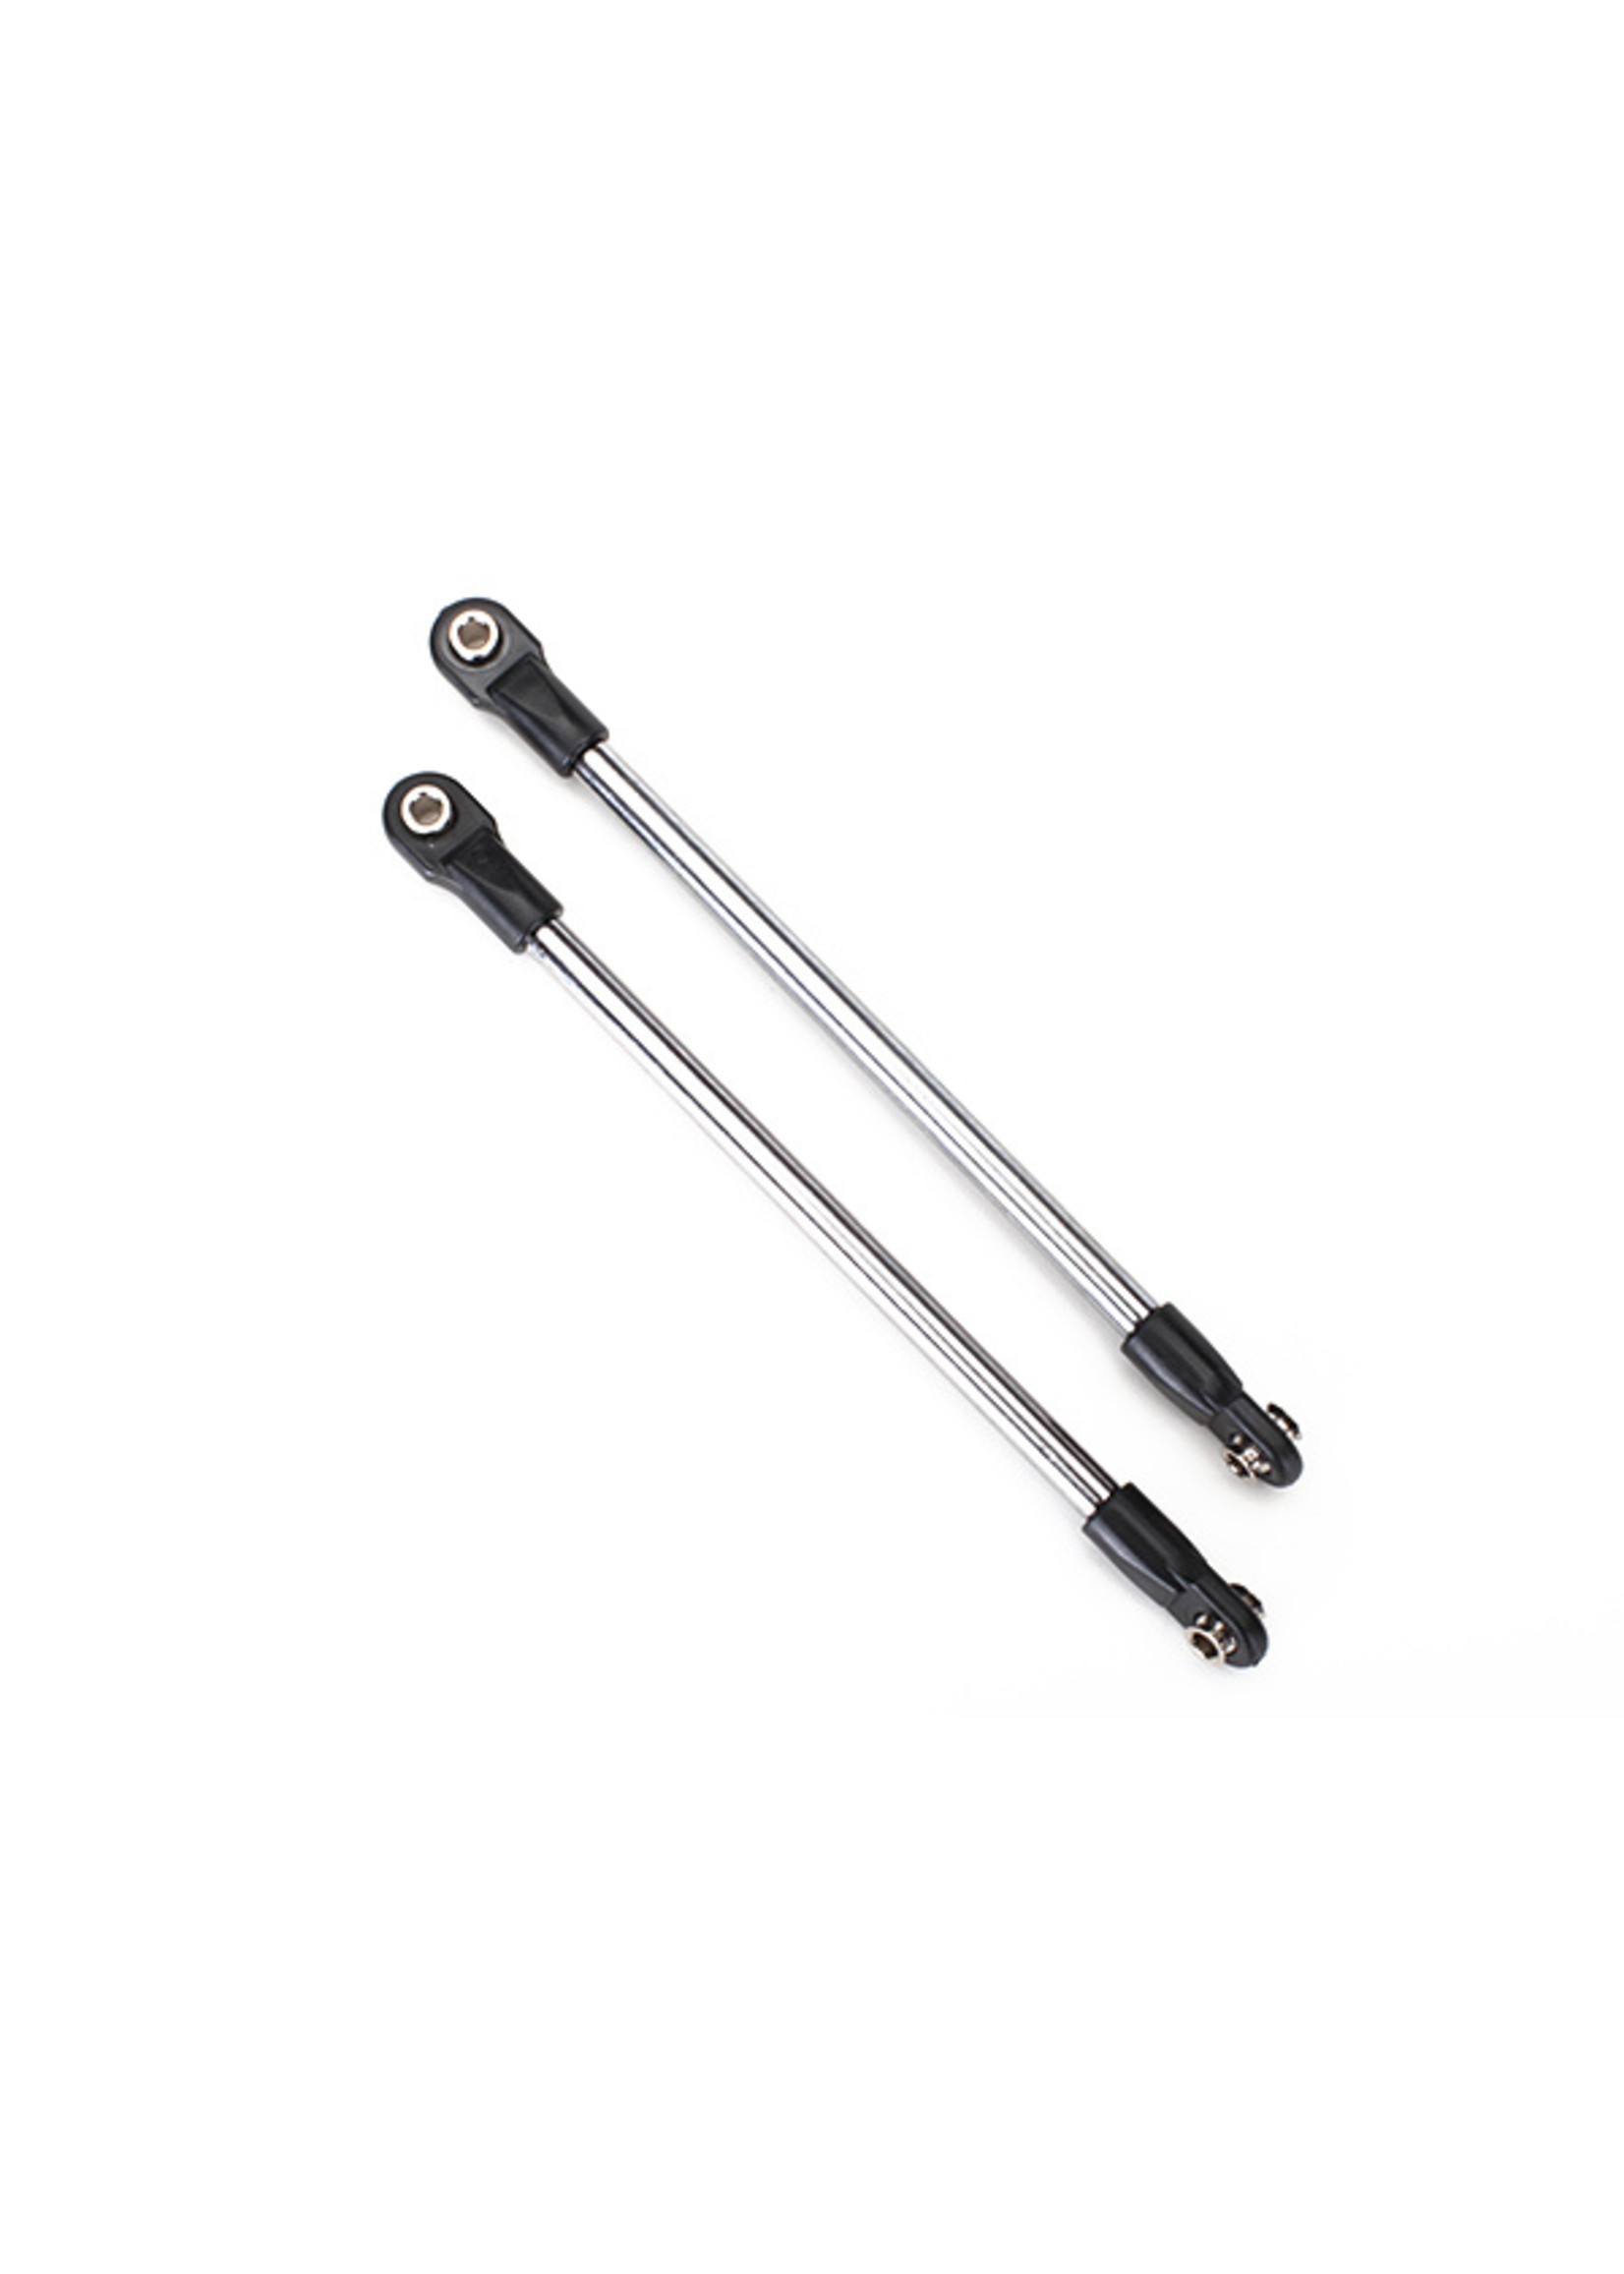 Traxxas 5318 - Steel Push Rod